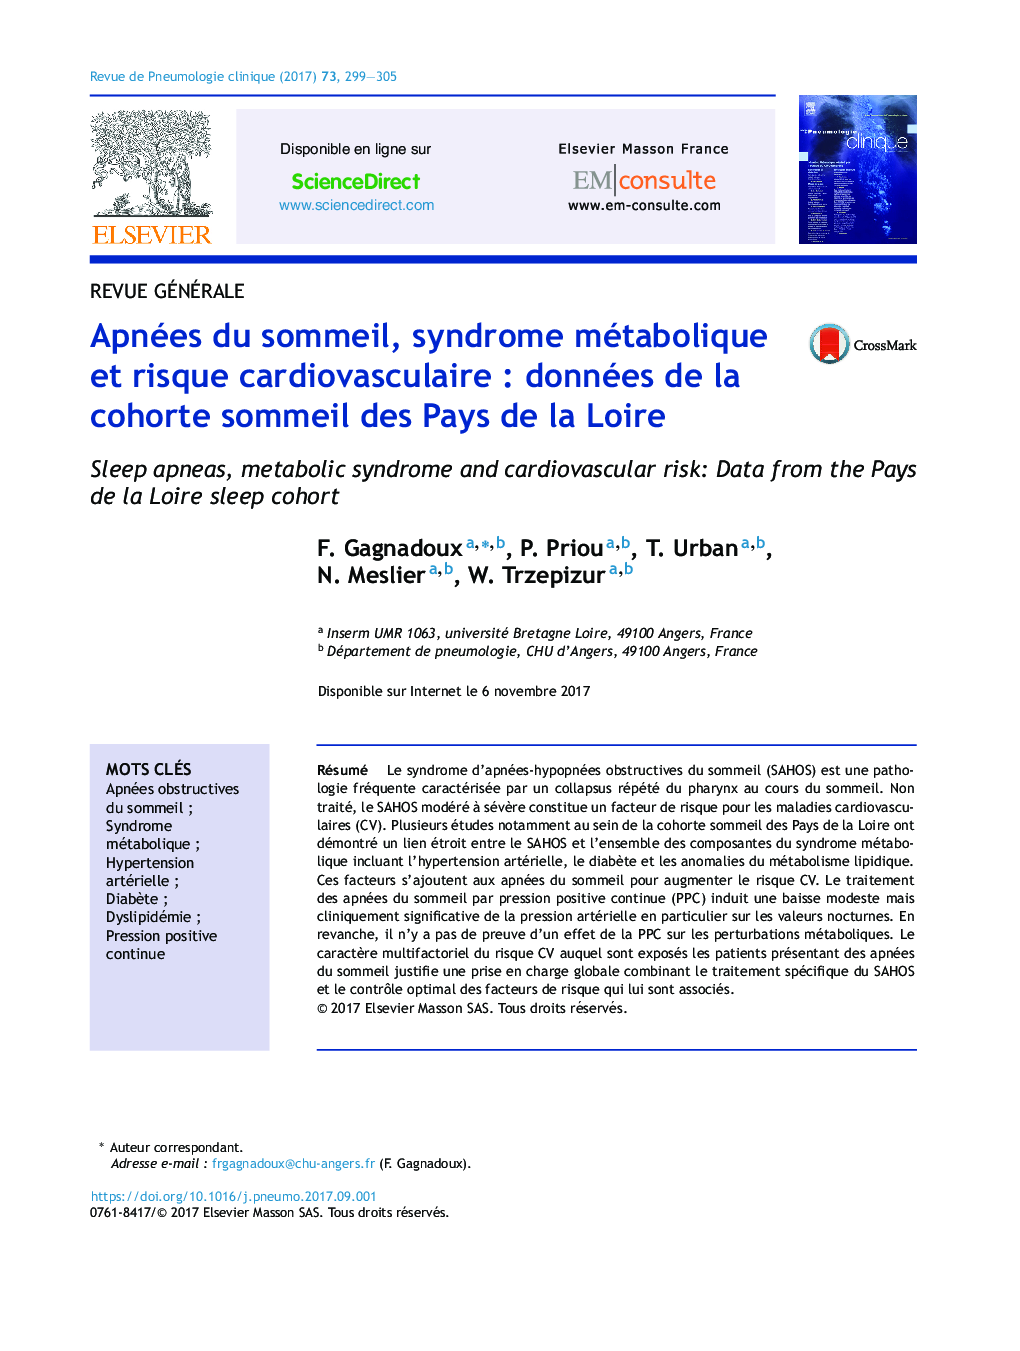 Apnées du sommeil, syndrome métabolique et risque cardiovasculaireÂ : données de la cohorte sommeil des Pays de la Loire